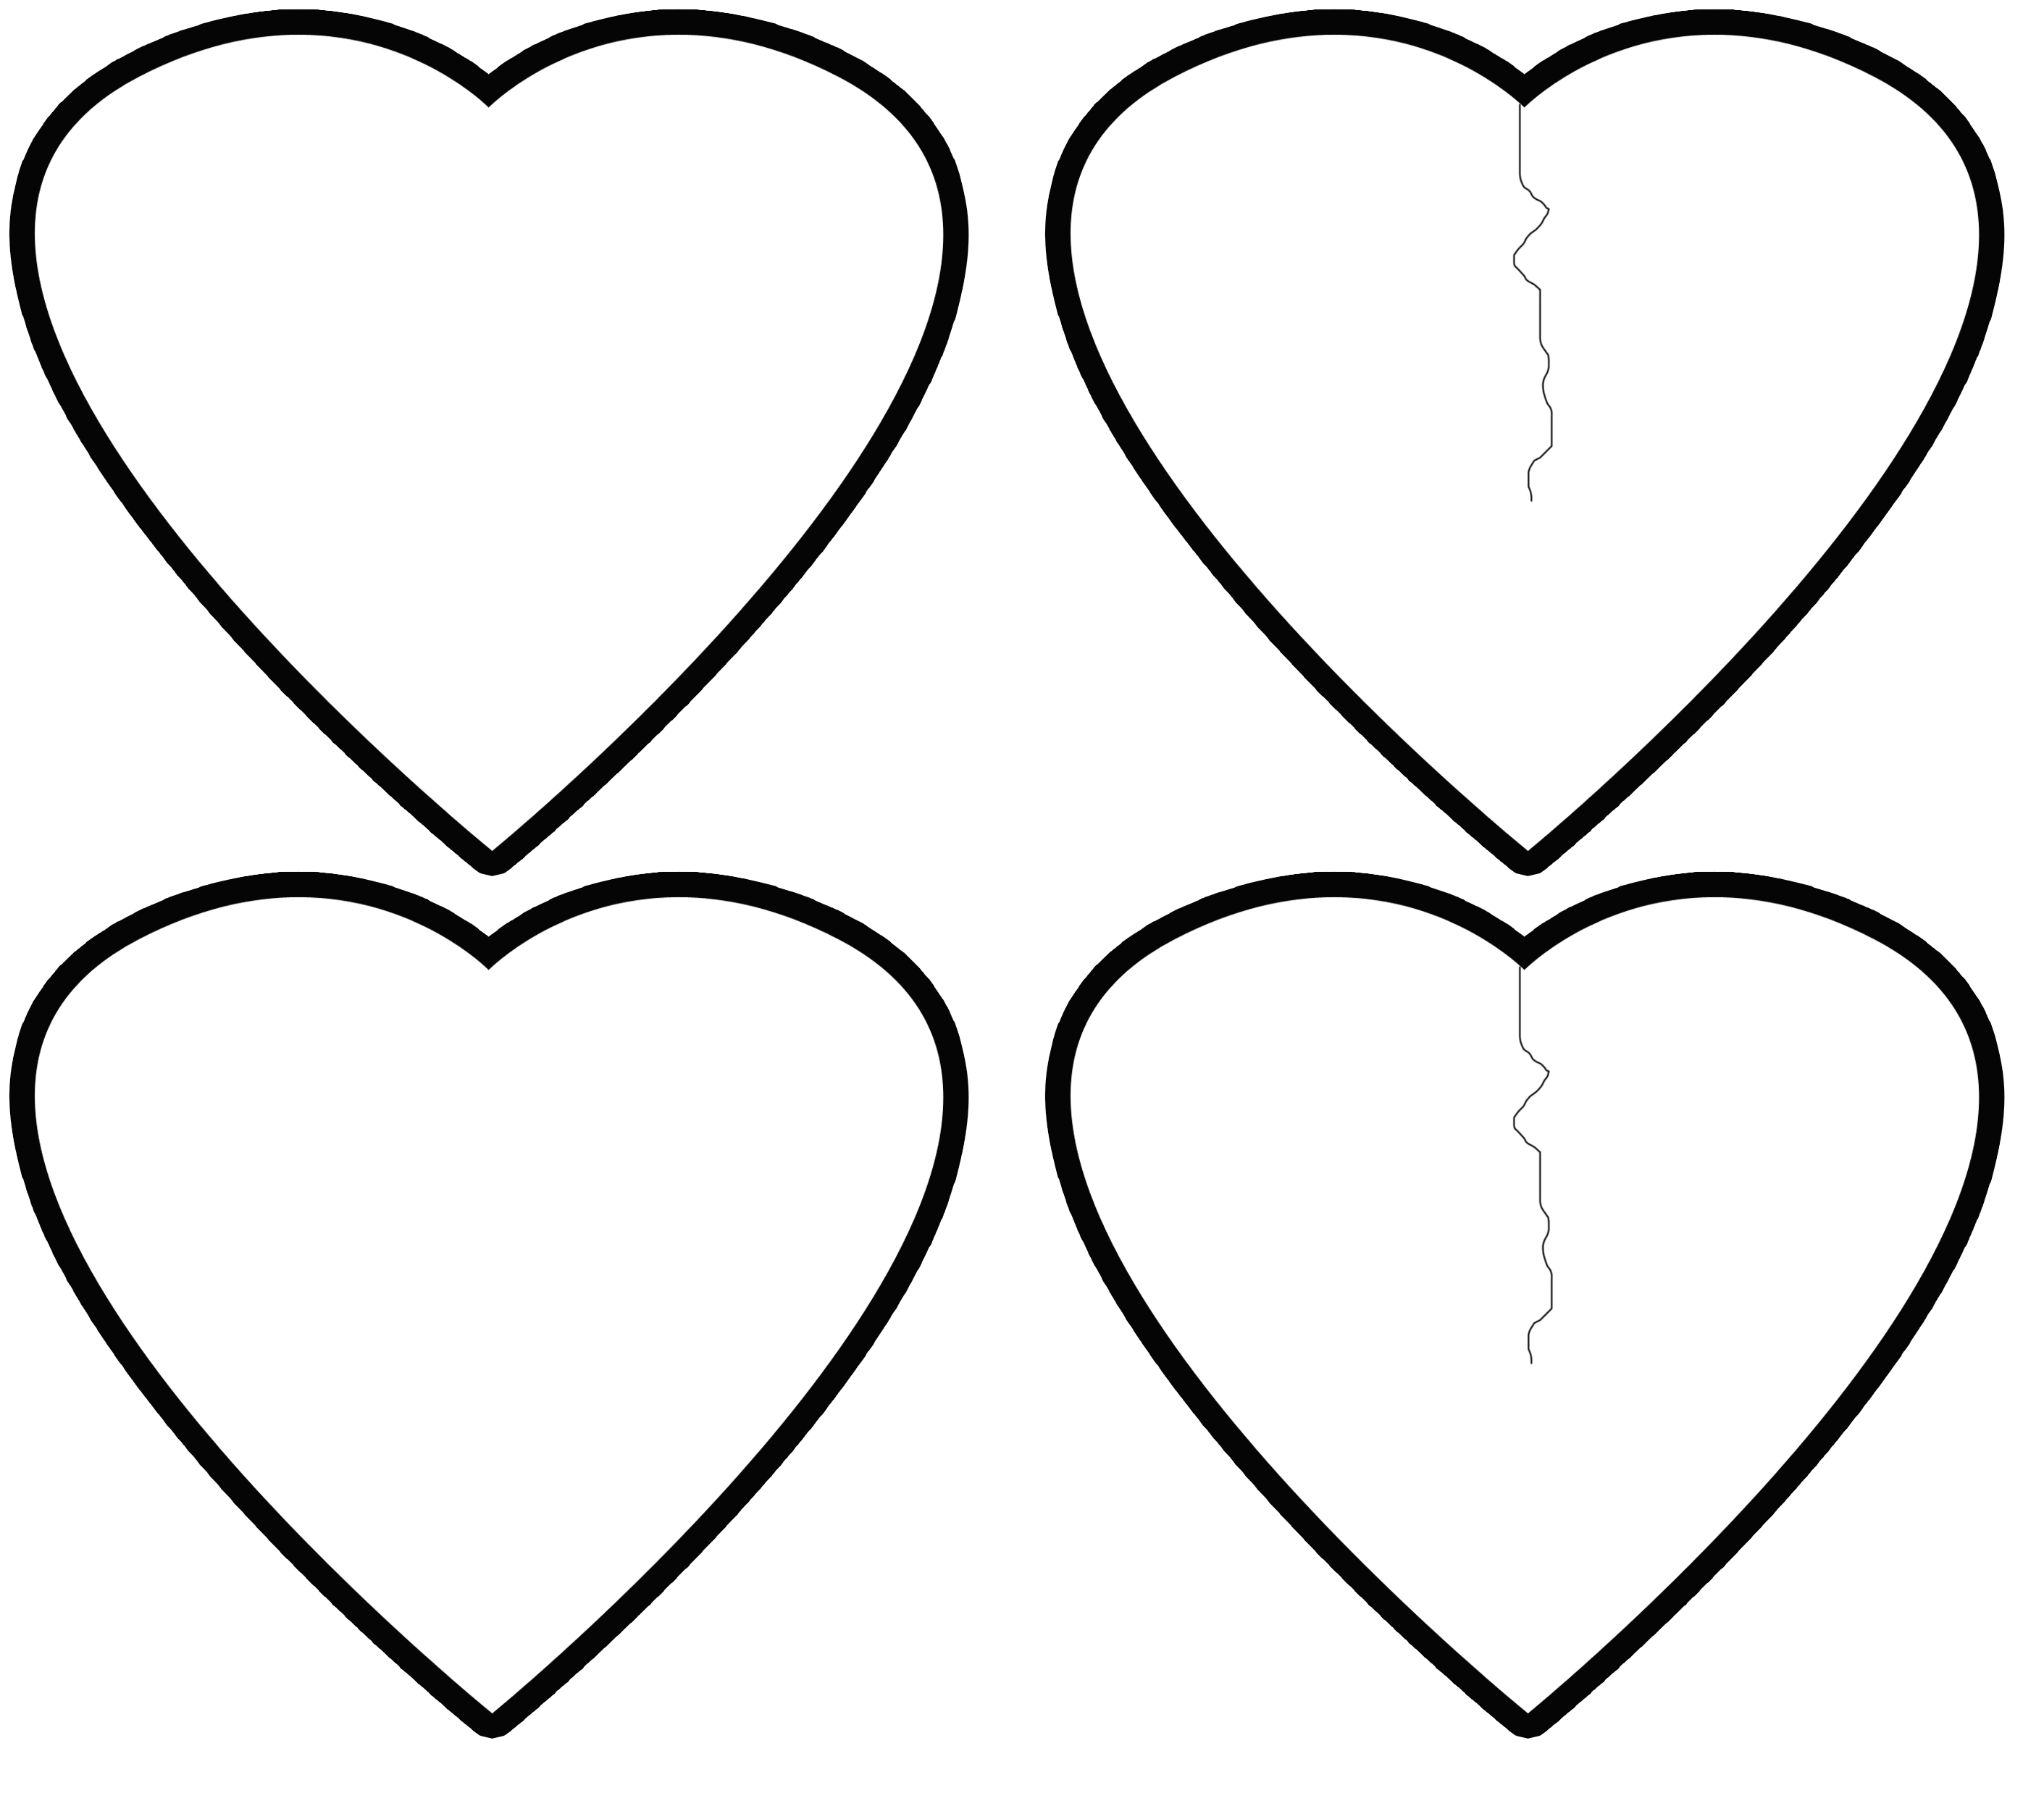 Трафареты сердечек для вырезания из бумаги